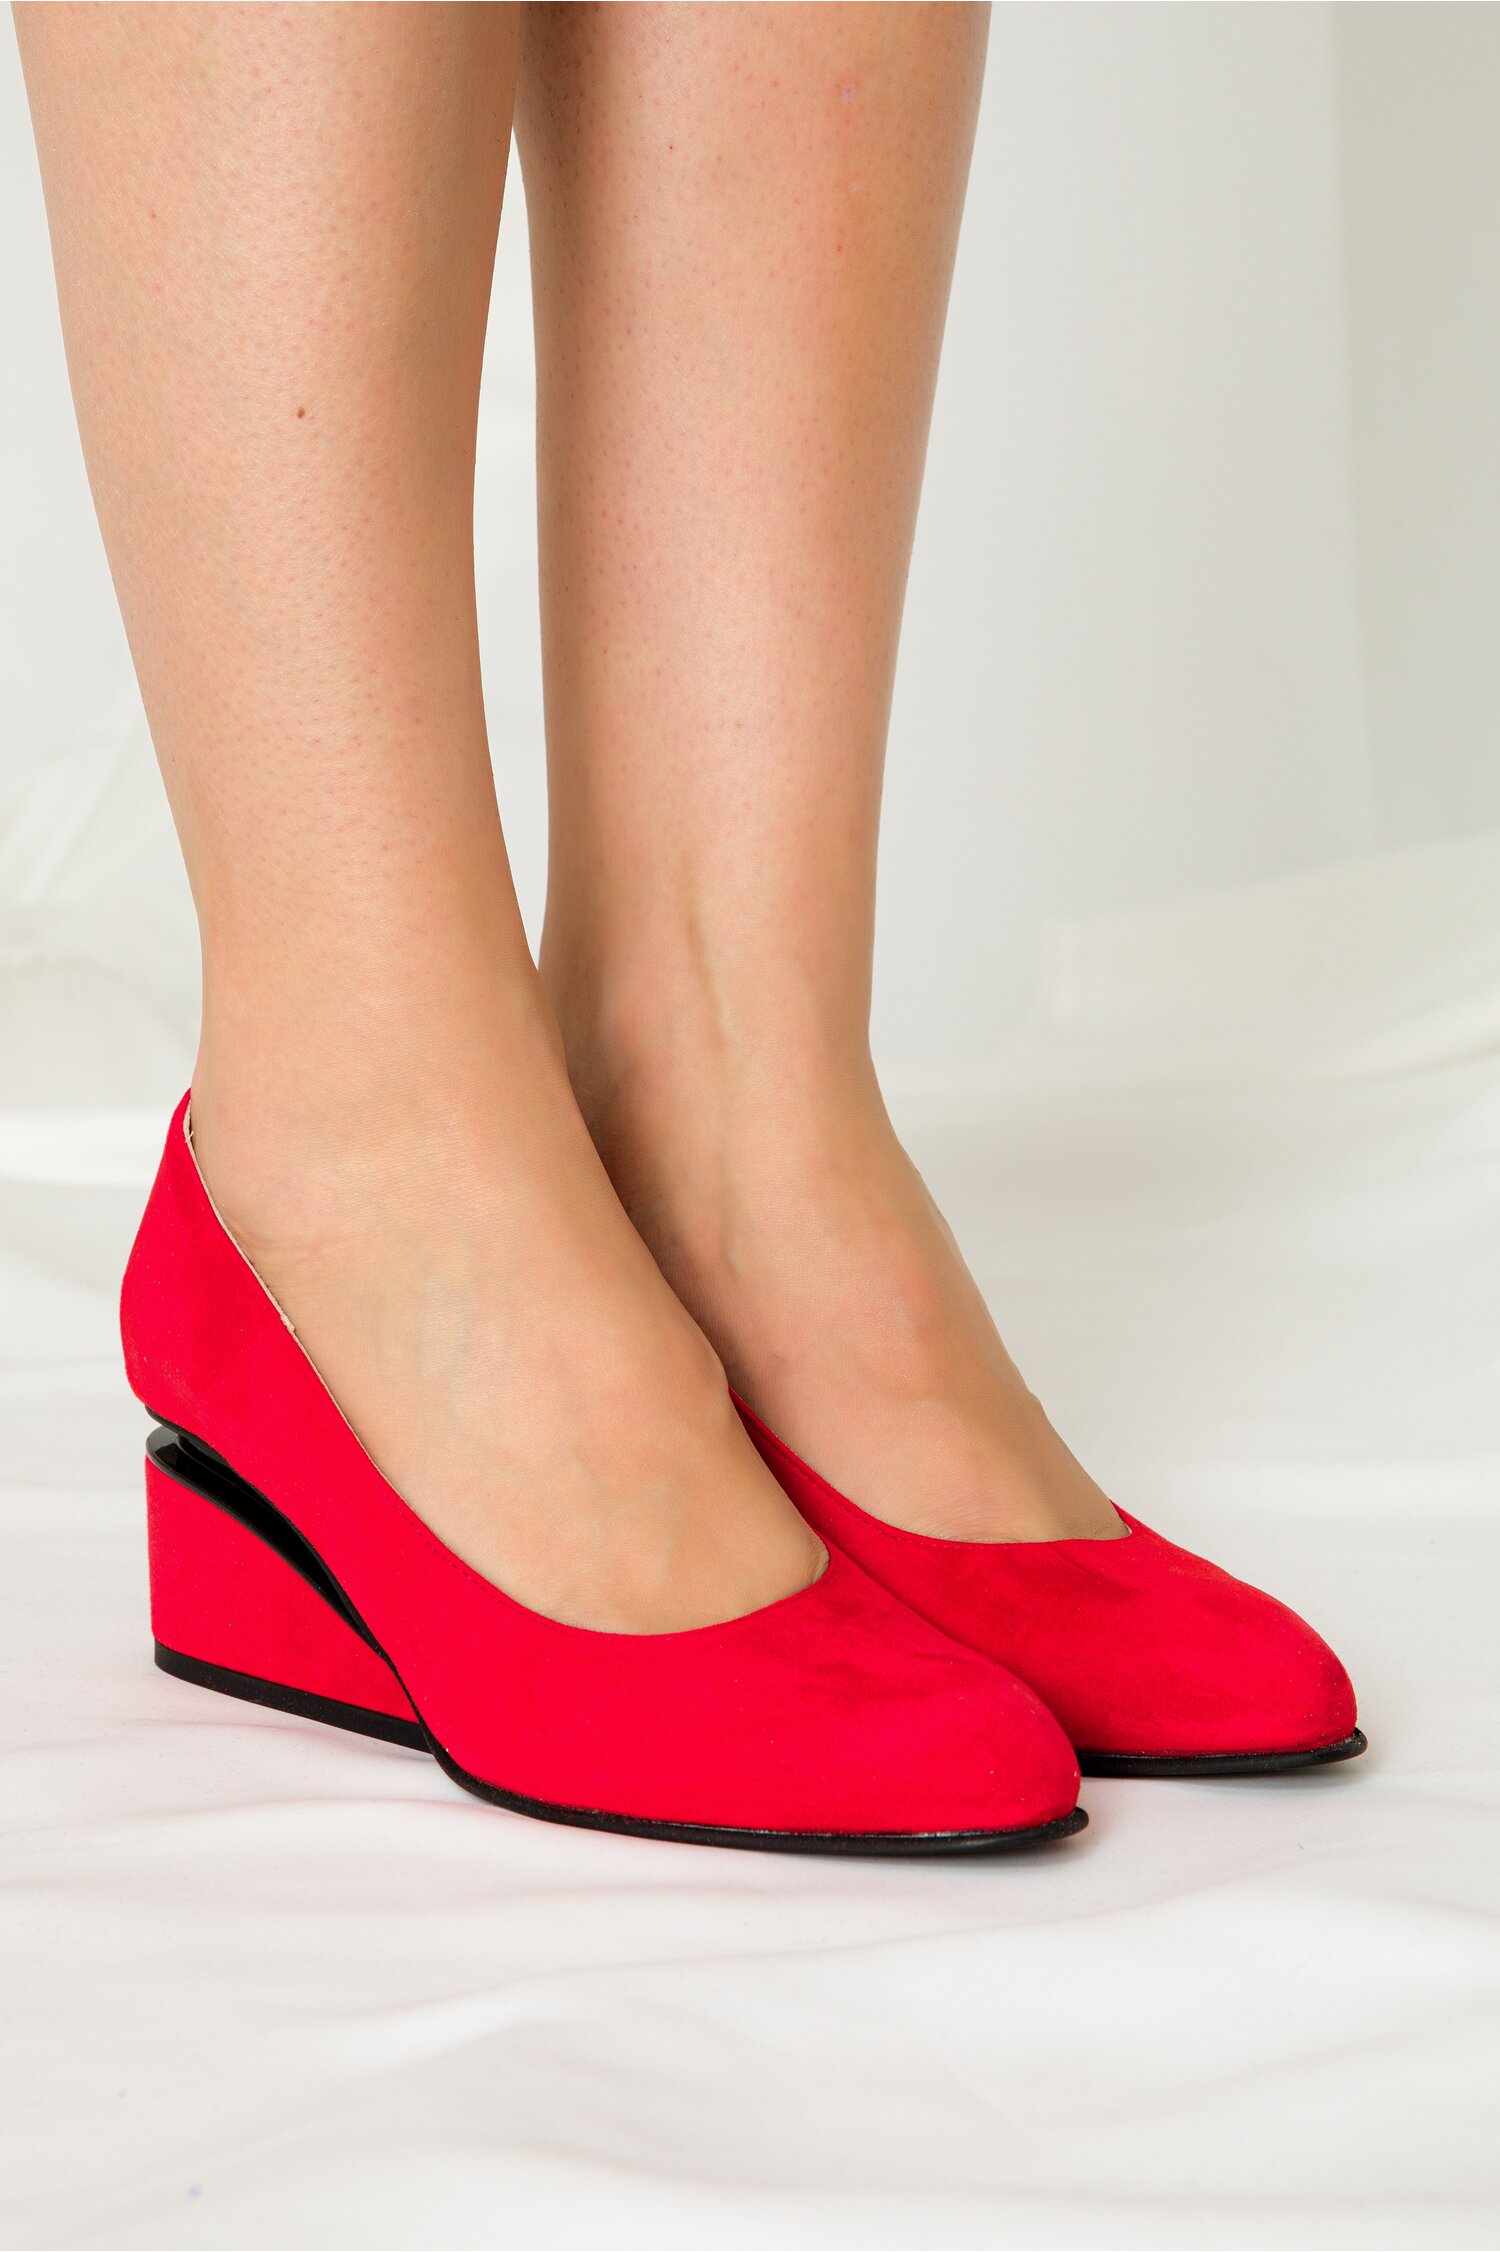 Pantofi rosii cu toc futurist din piele intoarsa 2022 ❤️ Pret Super dyfashion imagine noua 2022